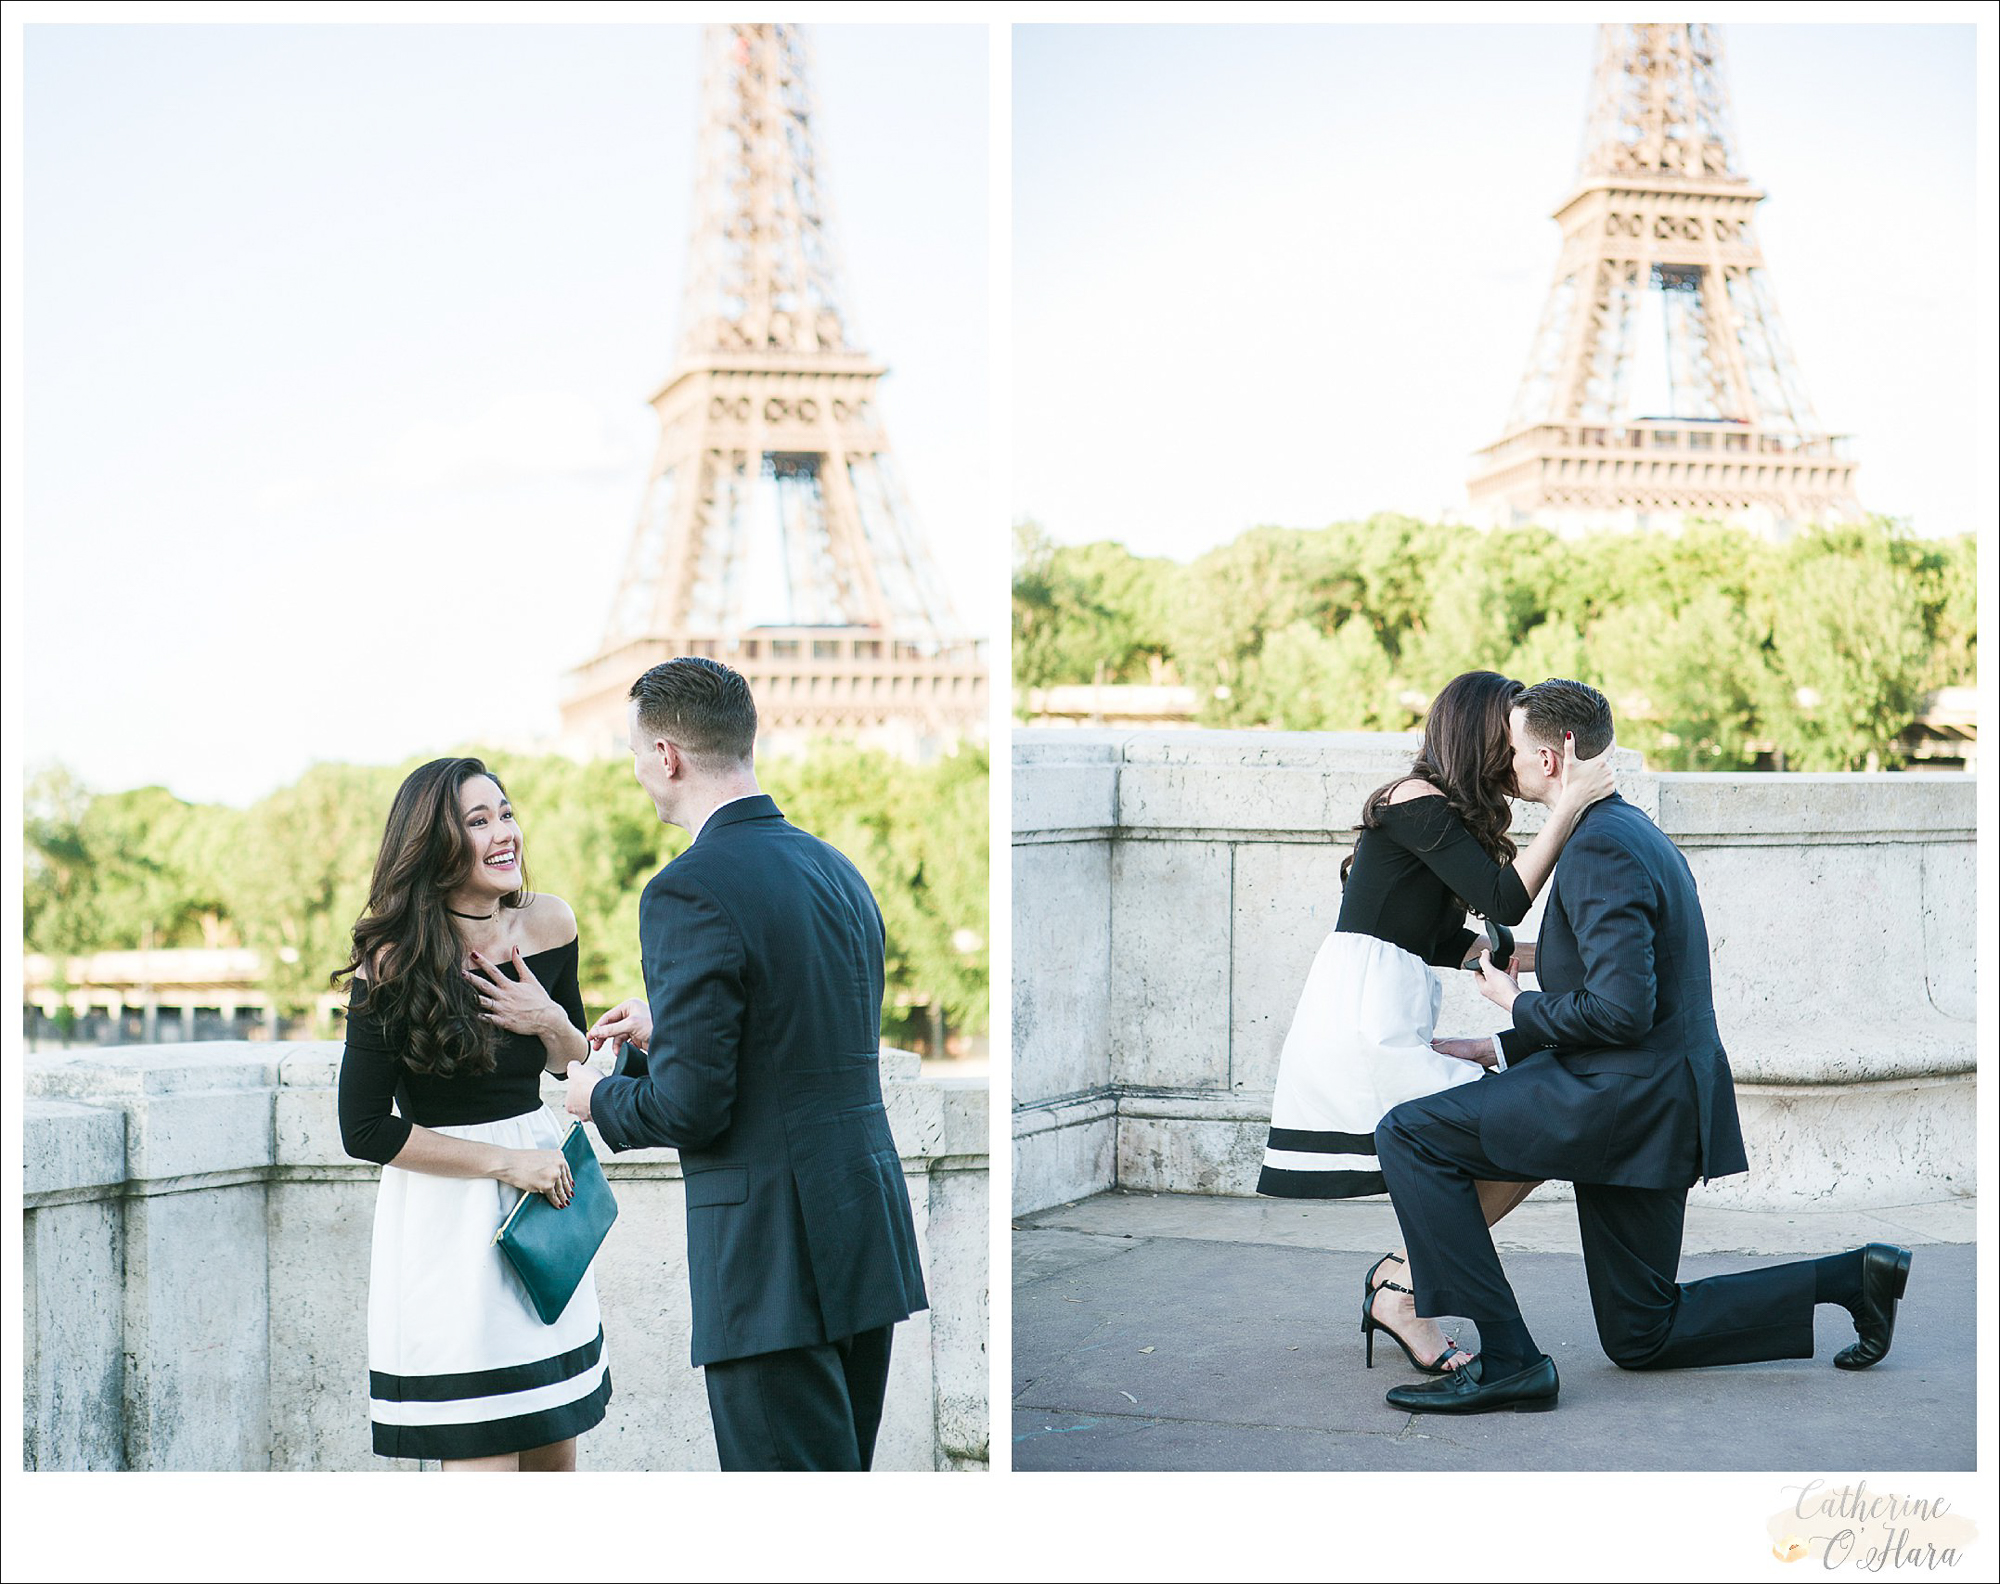 surprise proposal engagement photographer paris france-09.jpg